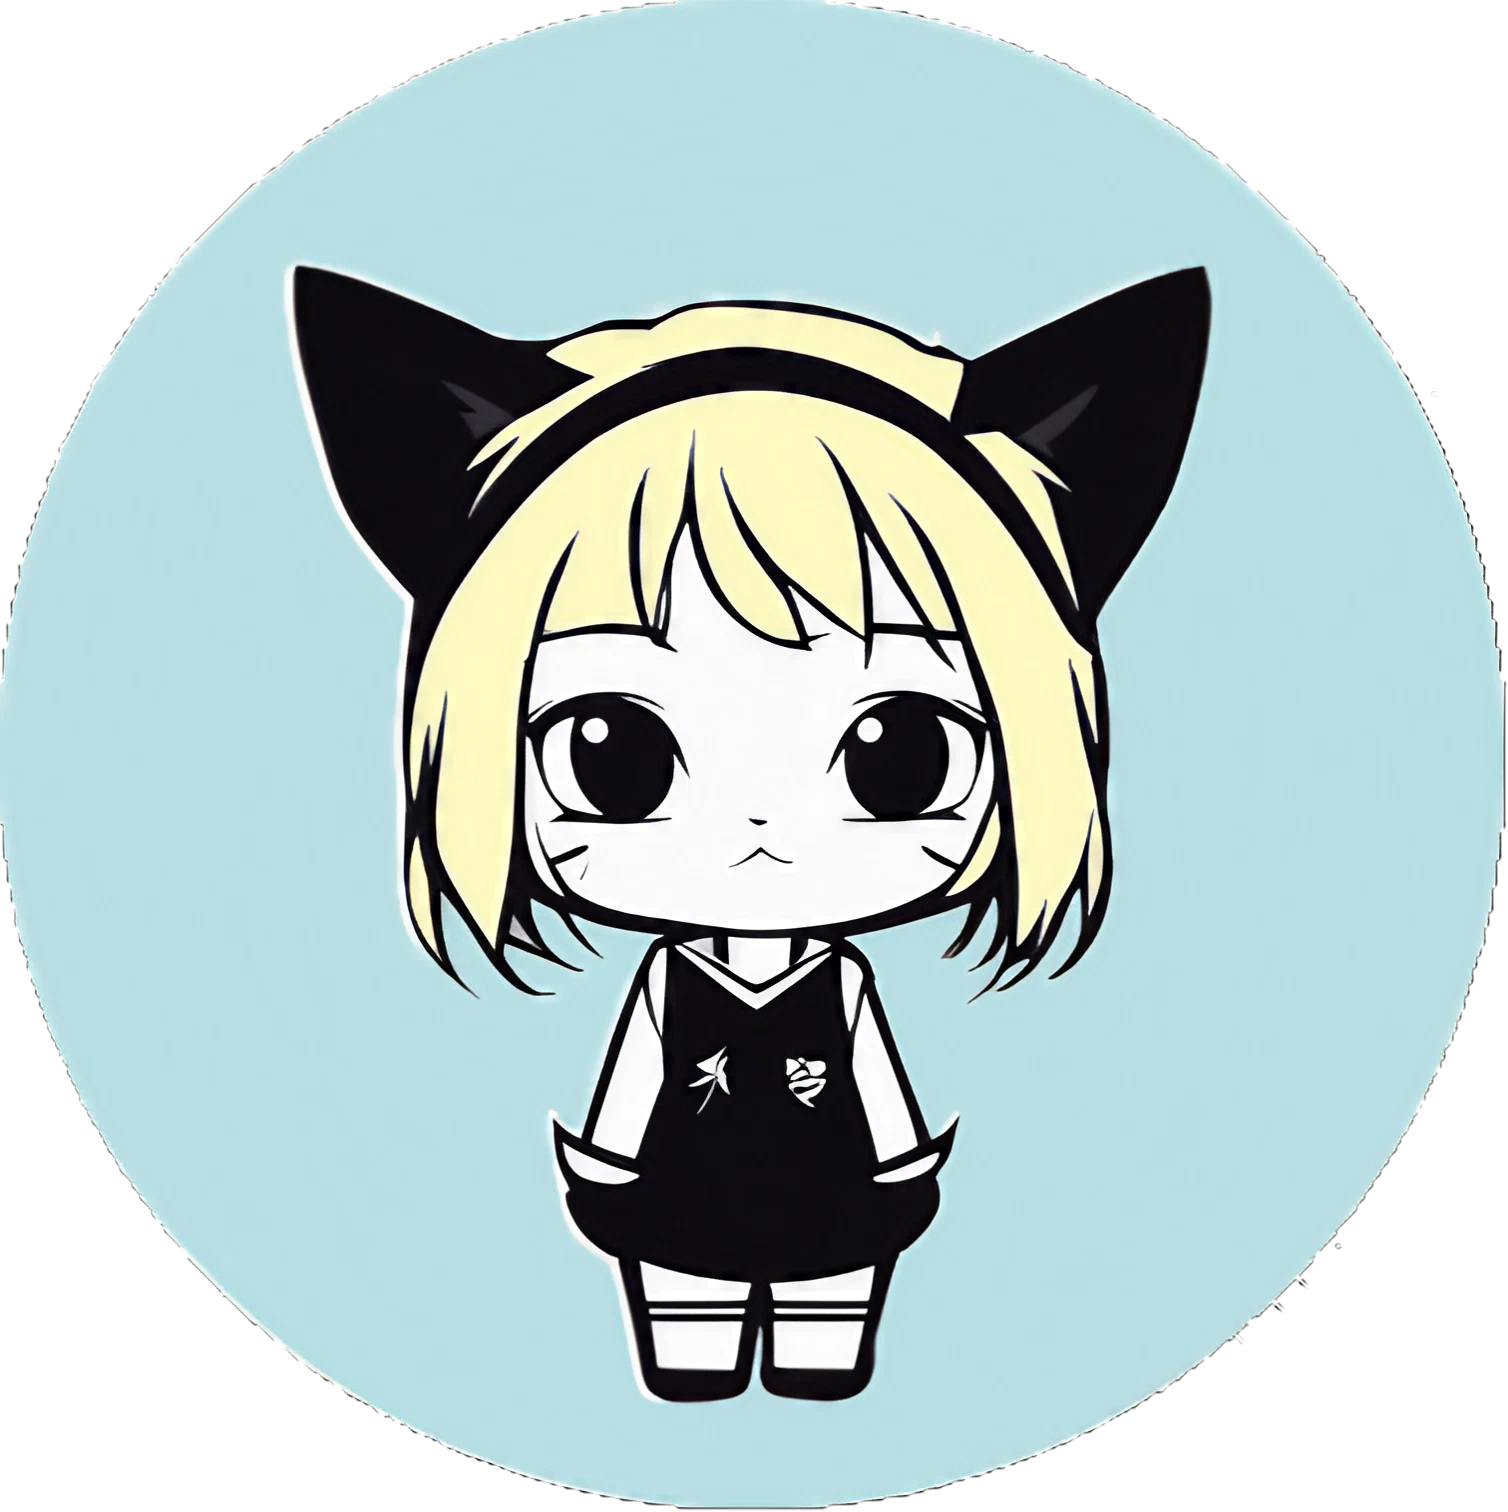 Blondes Cute Kawaii Katzen-Mädchen - Sticker - 3x3cm